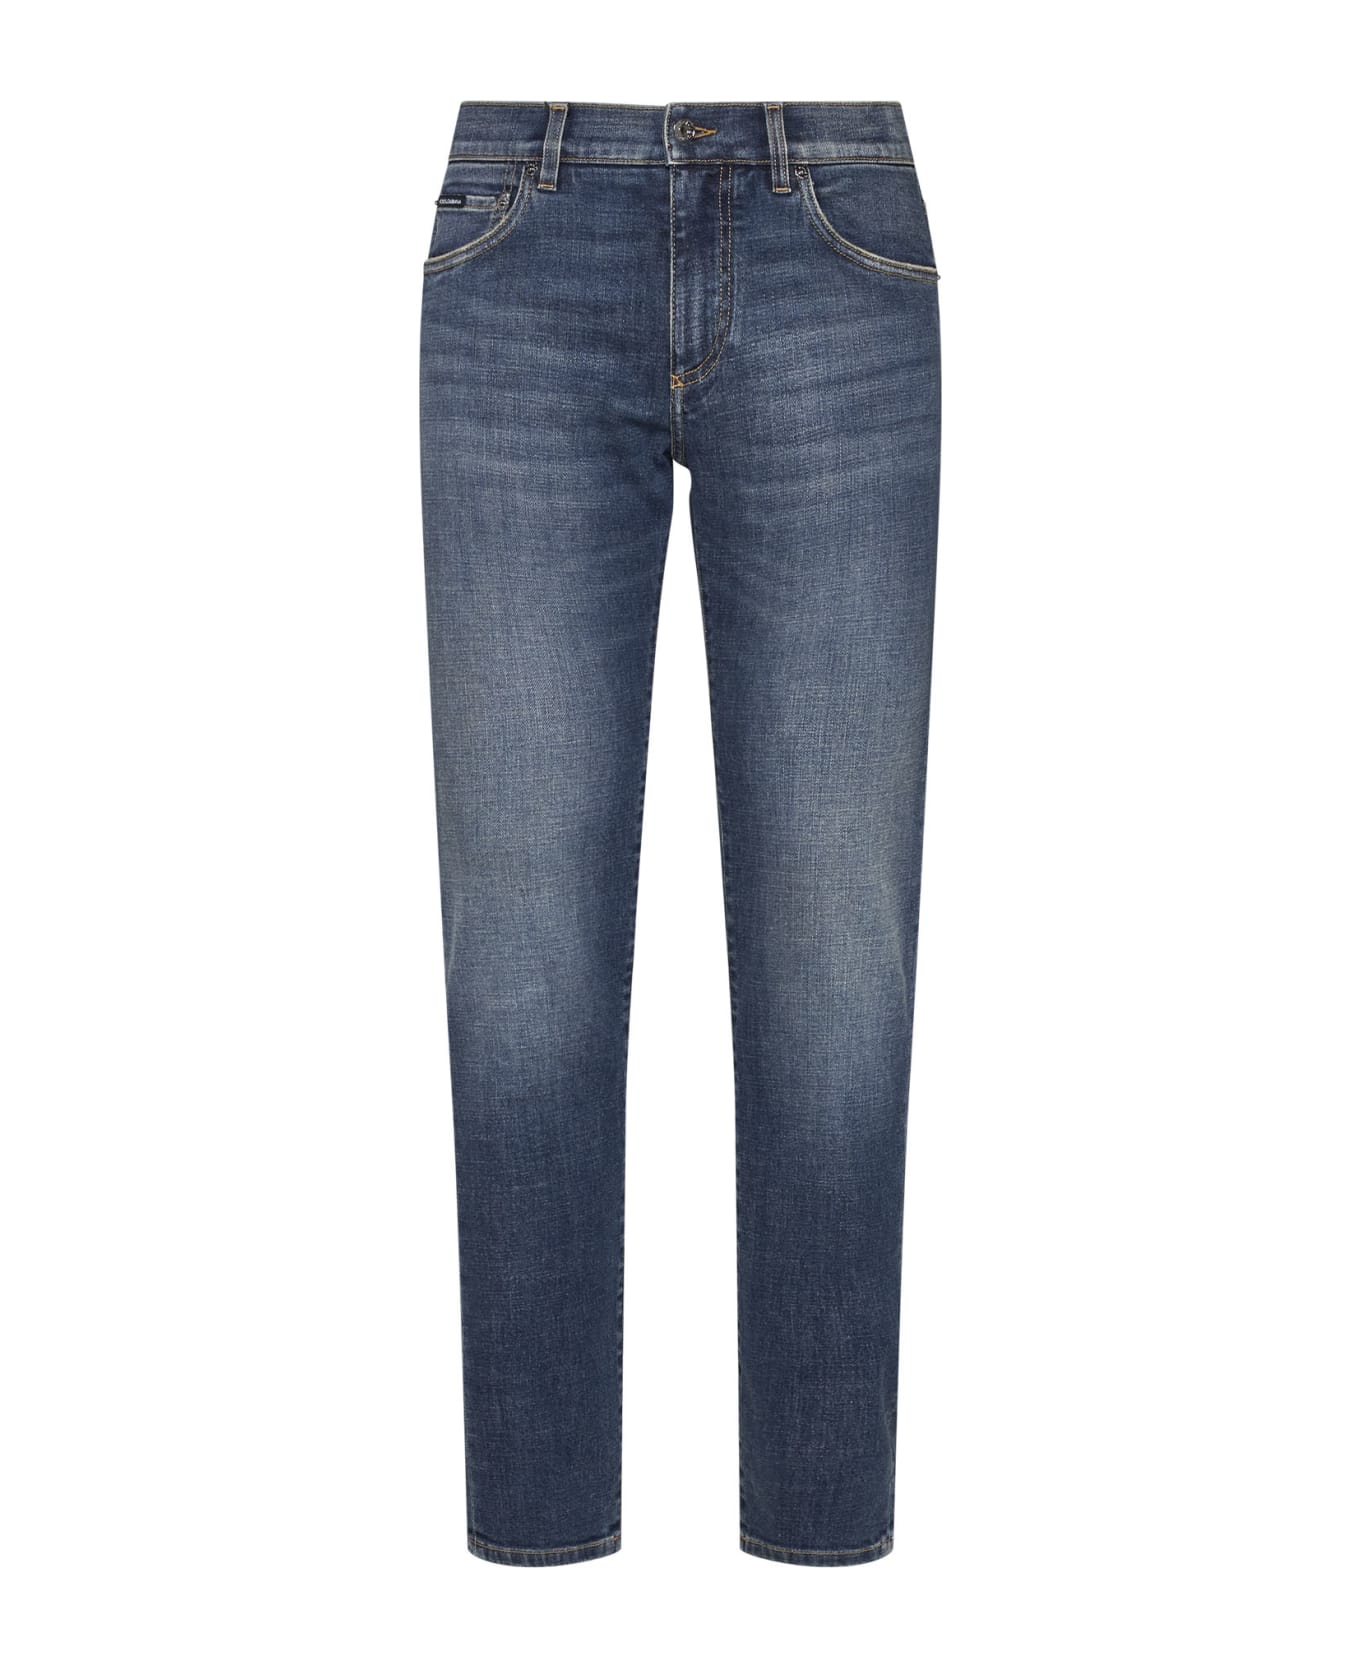 Dolce & Gabbana Stretch Skinny Jeans - Denim